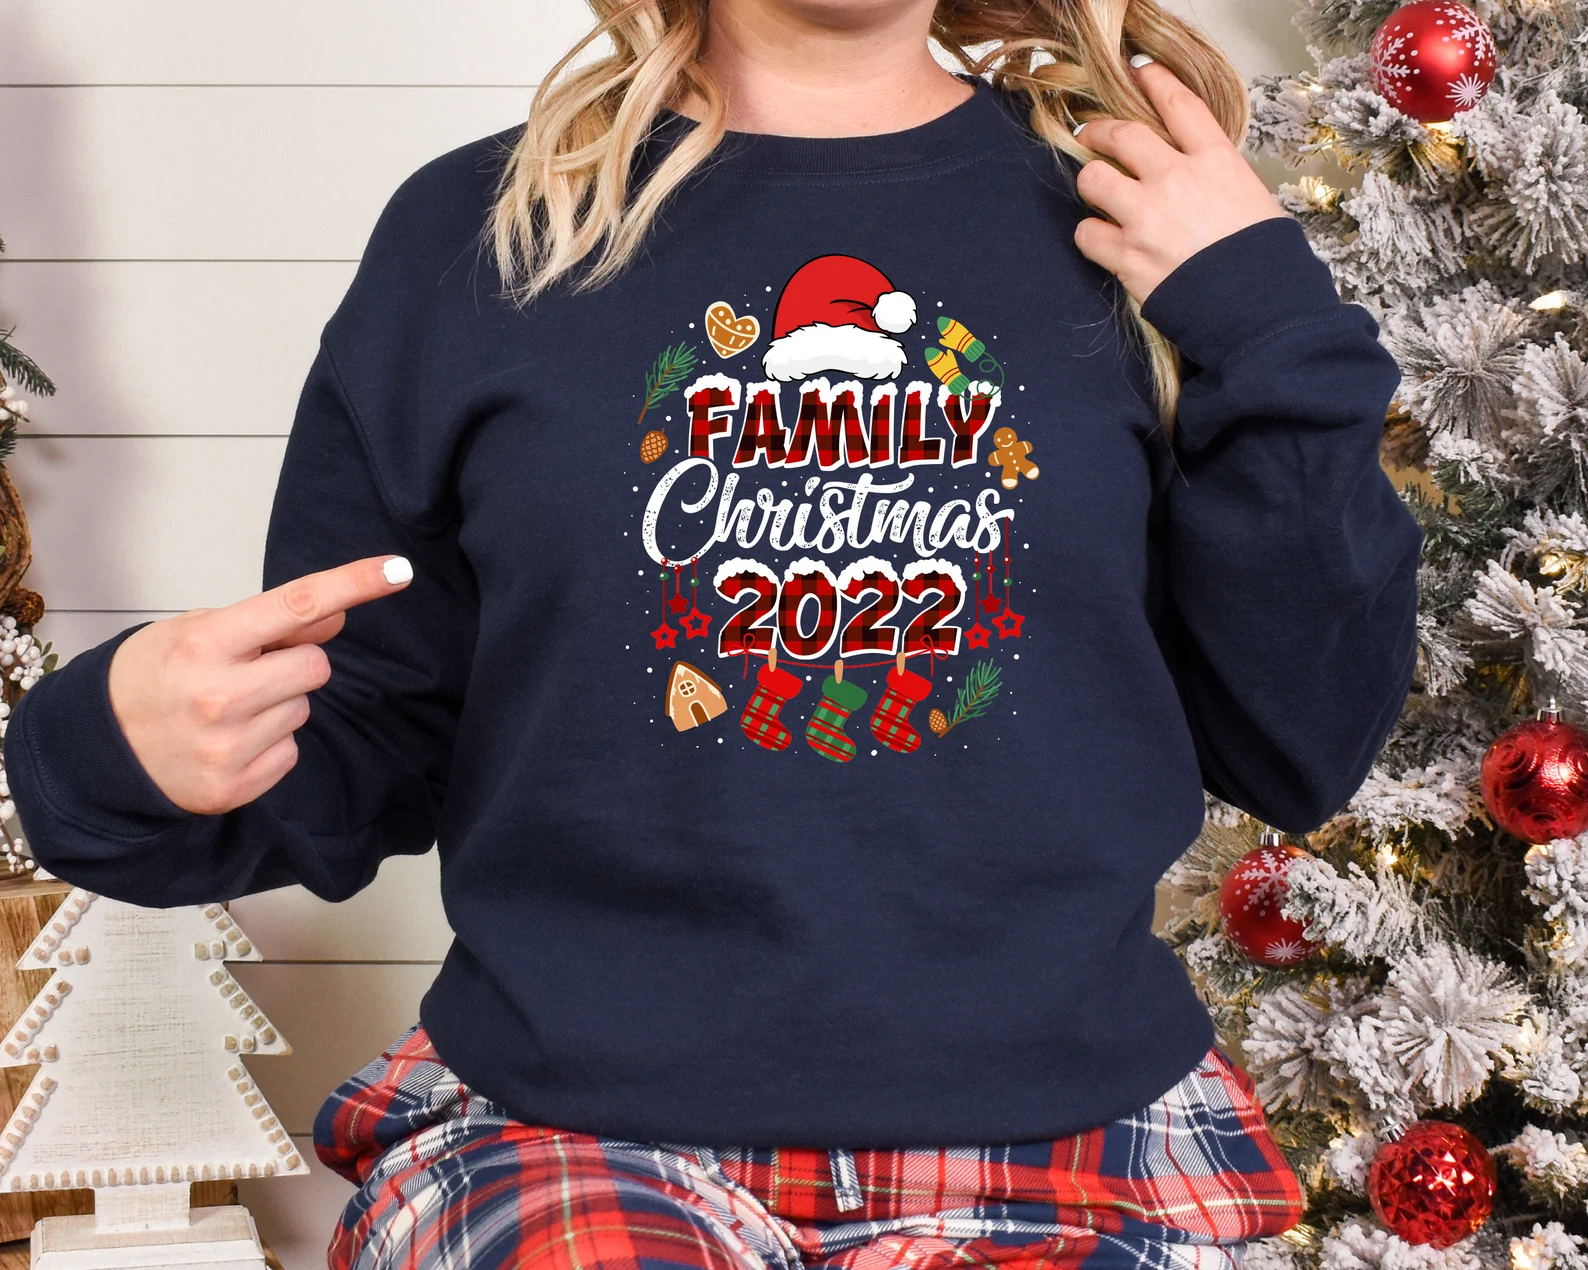 2022 Family Christmas Shirt - Christmas Family Shirt - Christmas Gift -  Christmas Family Matching Tee